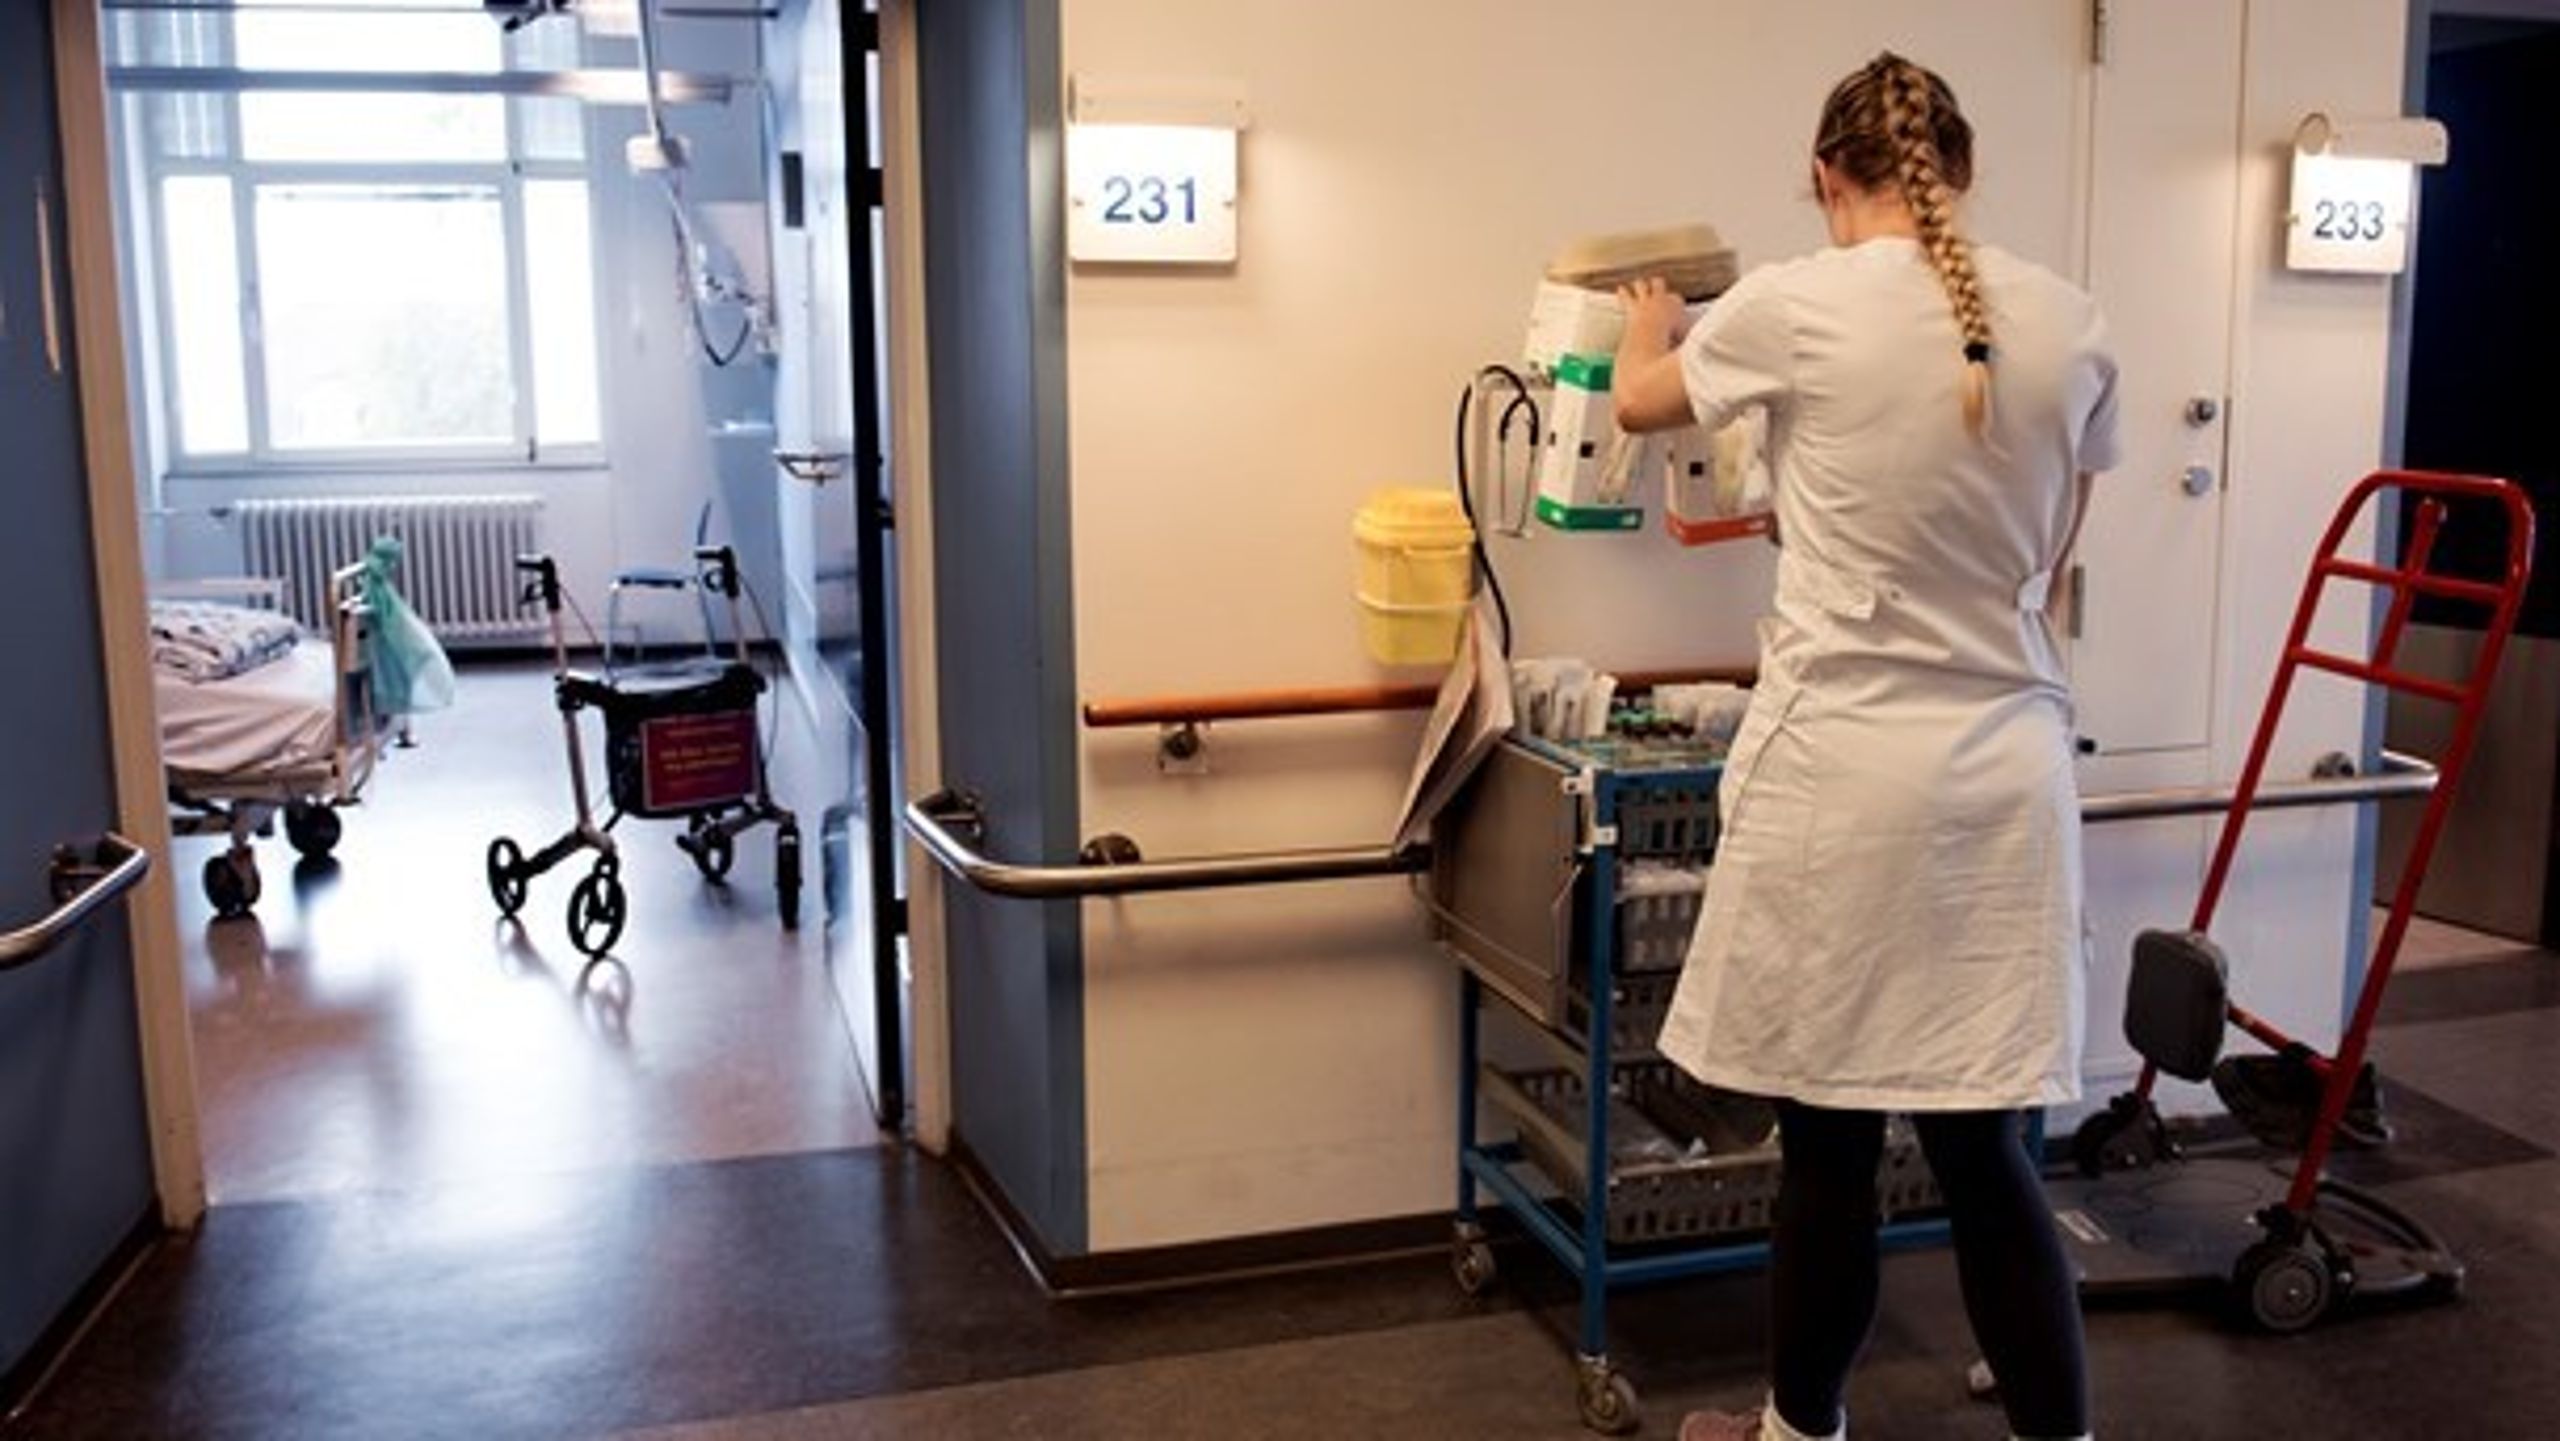 Det er afgørende, at godkendelse af medicinsk udstyr til patientdiagnose og behandling kan ske fra et dansk bemyndiget organ, skriver medicodirektør Peter Huntley (Foto: Linda Kastrup/Ritzau Scanpix)<br>